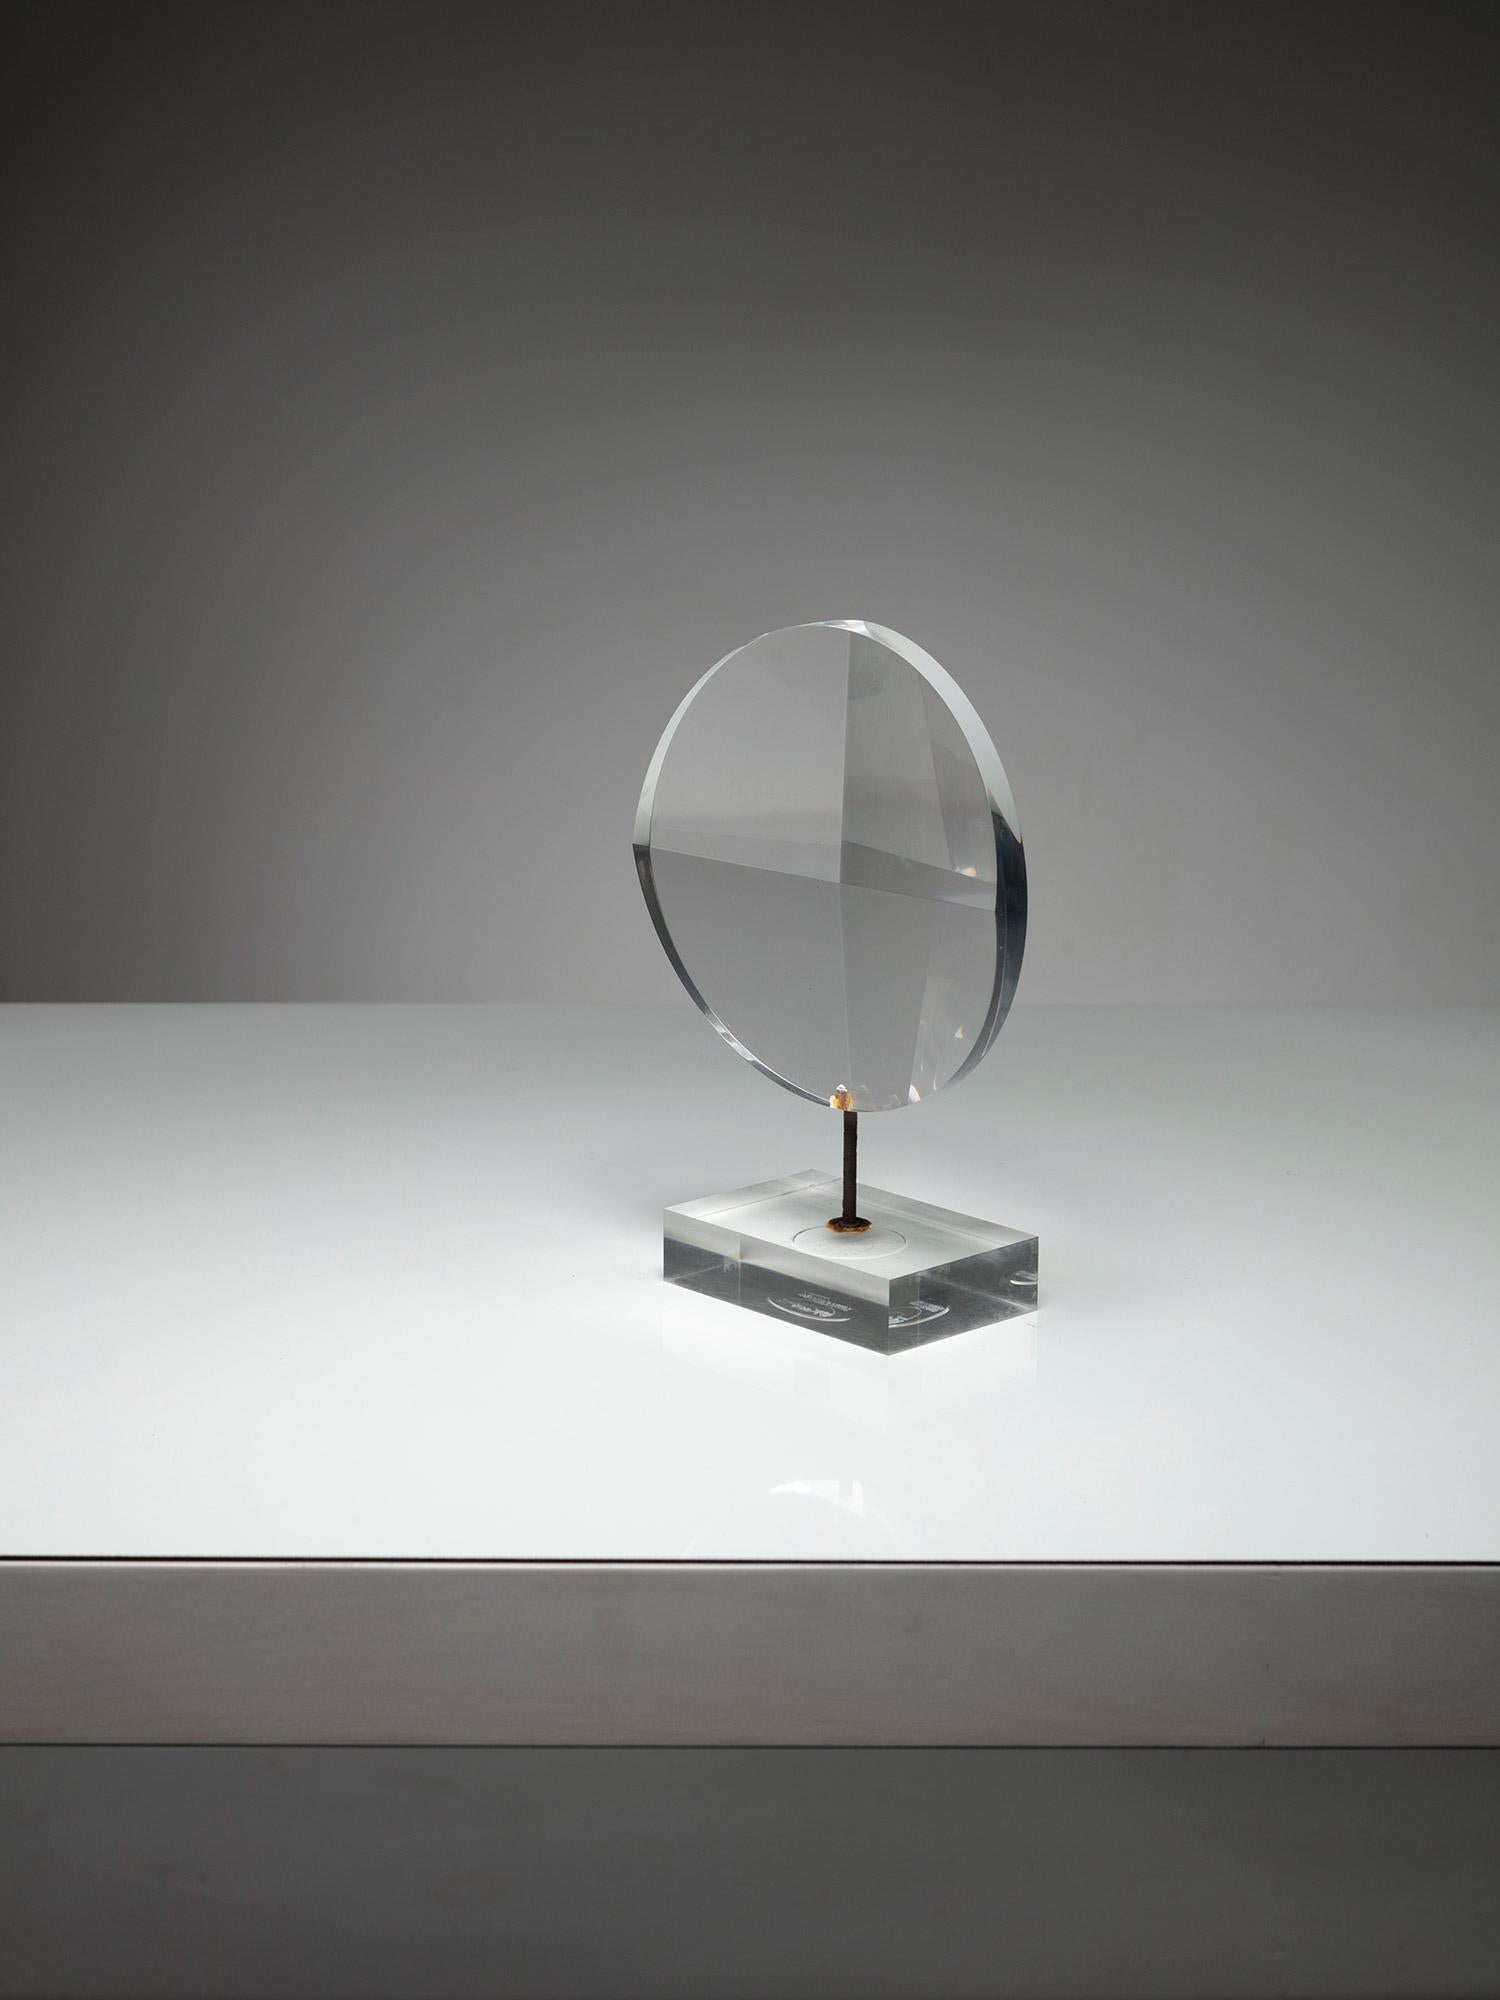 Bemerkenswerte optische Skulptur von Alessio Tasca für Fusina.
Kreisförmige Form mit geschliffenen Flächen, die endlose Brechungen erzeugen.